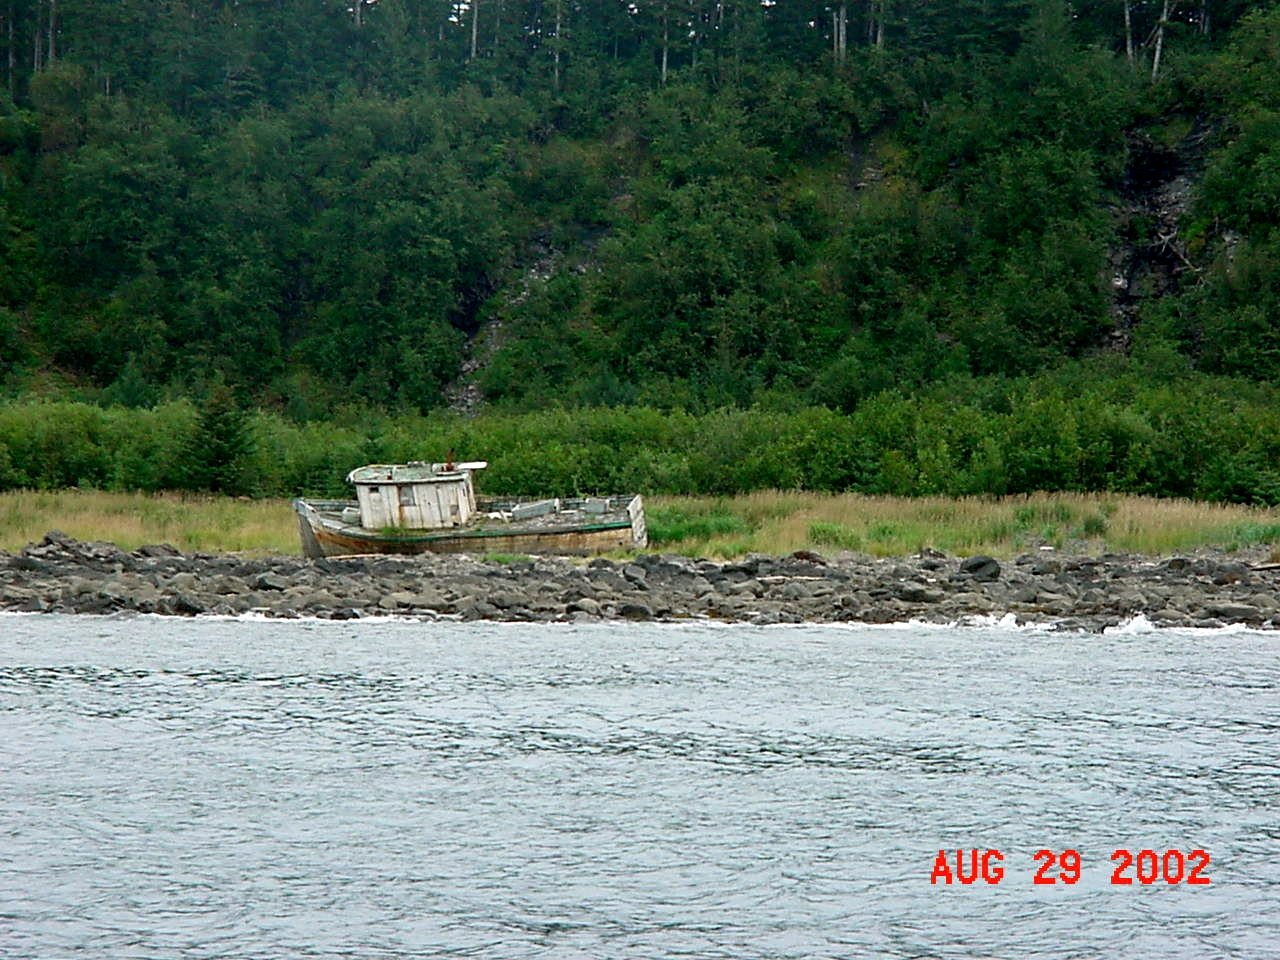 A wreck on Latouche Island, Prince William Sound